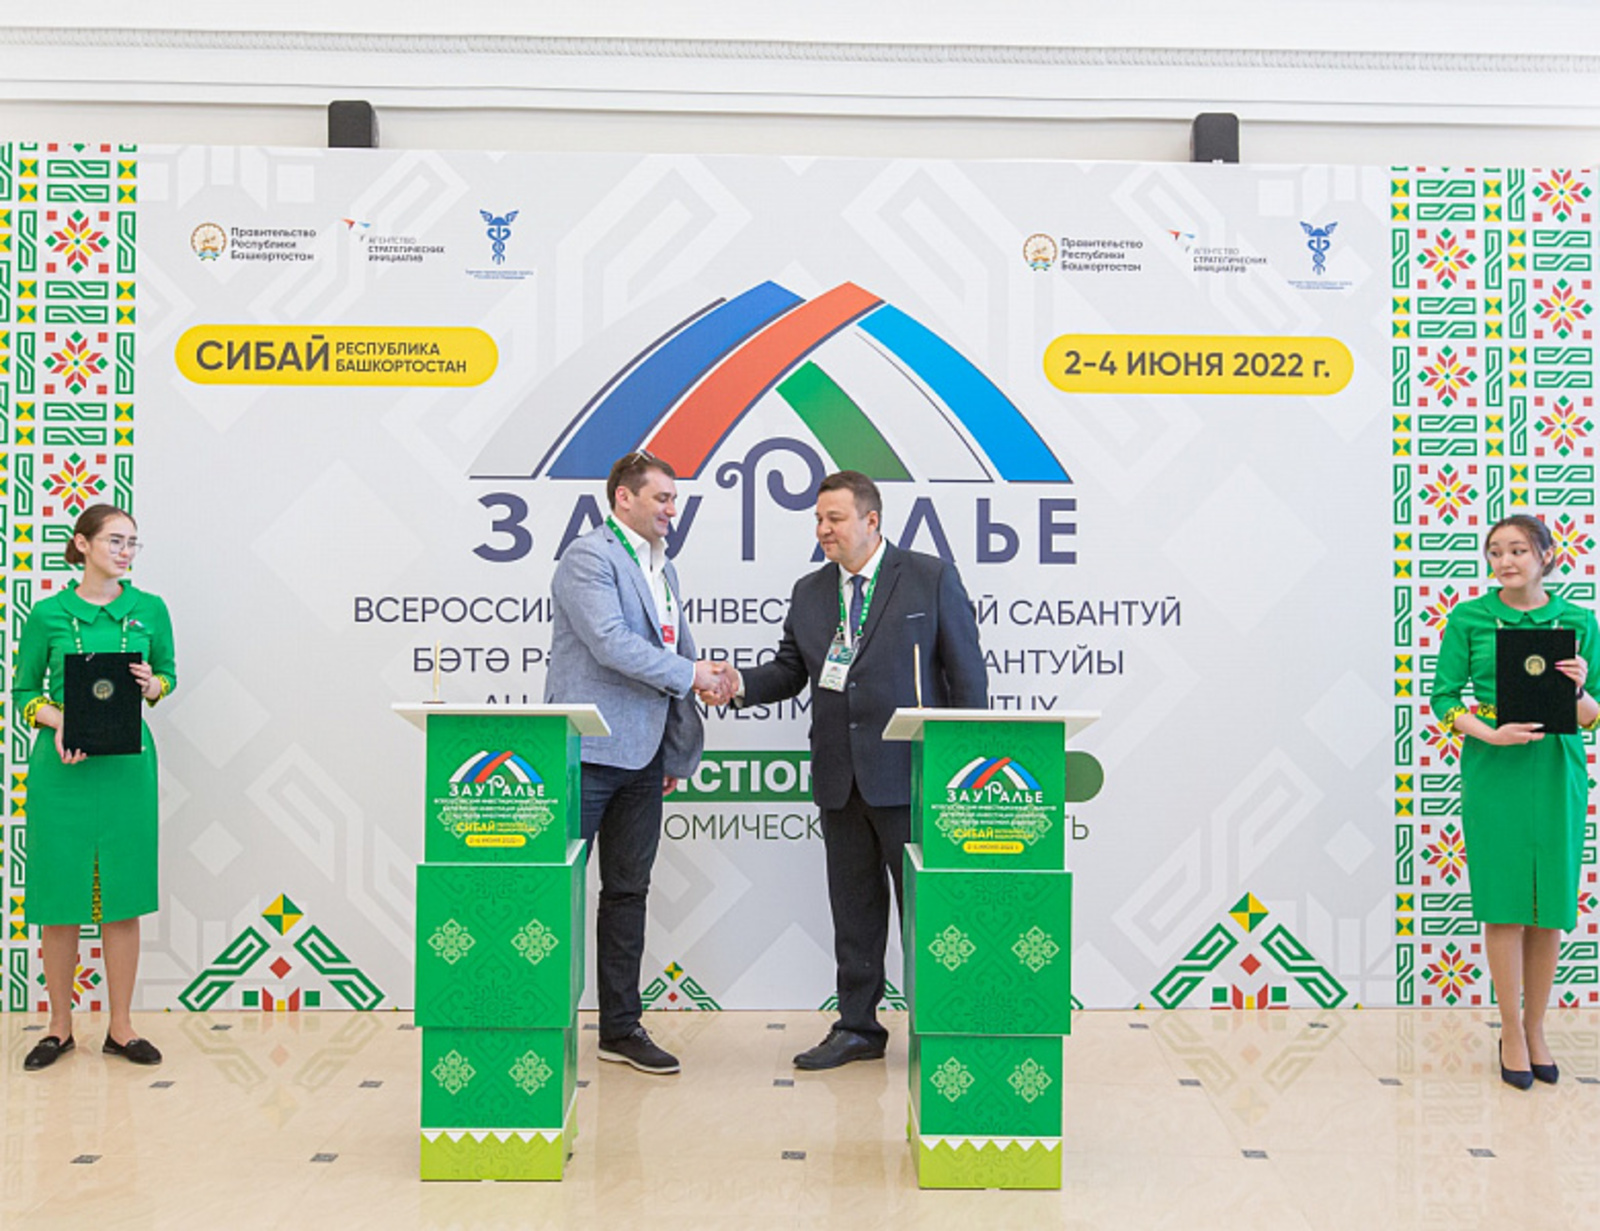 На Всероссийском инвестсабантуе «Зауралье – 2022» по линии Минторга РБ подписано соглашение на сумму 130 млн рублей